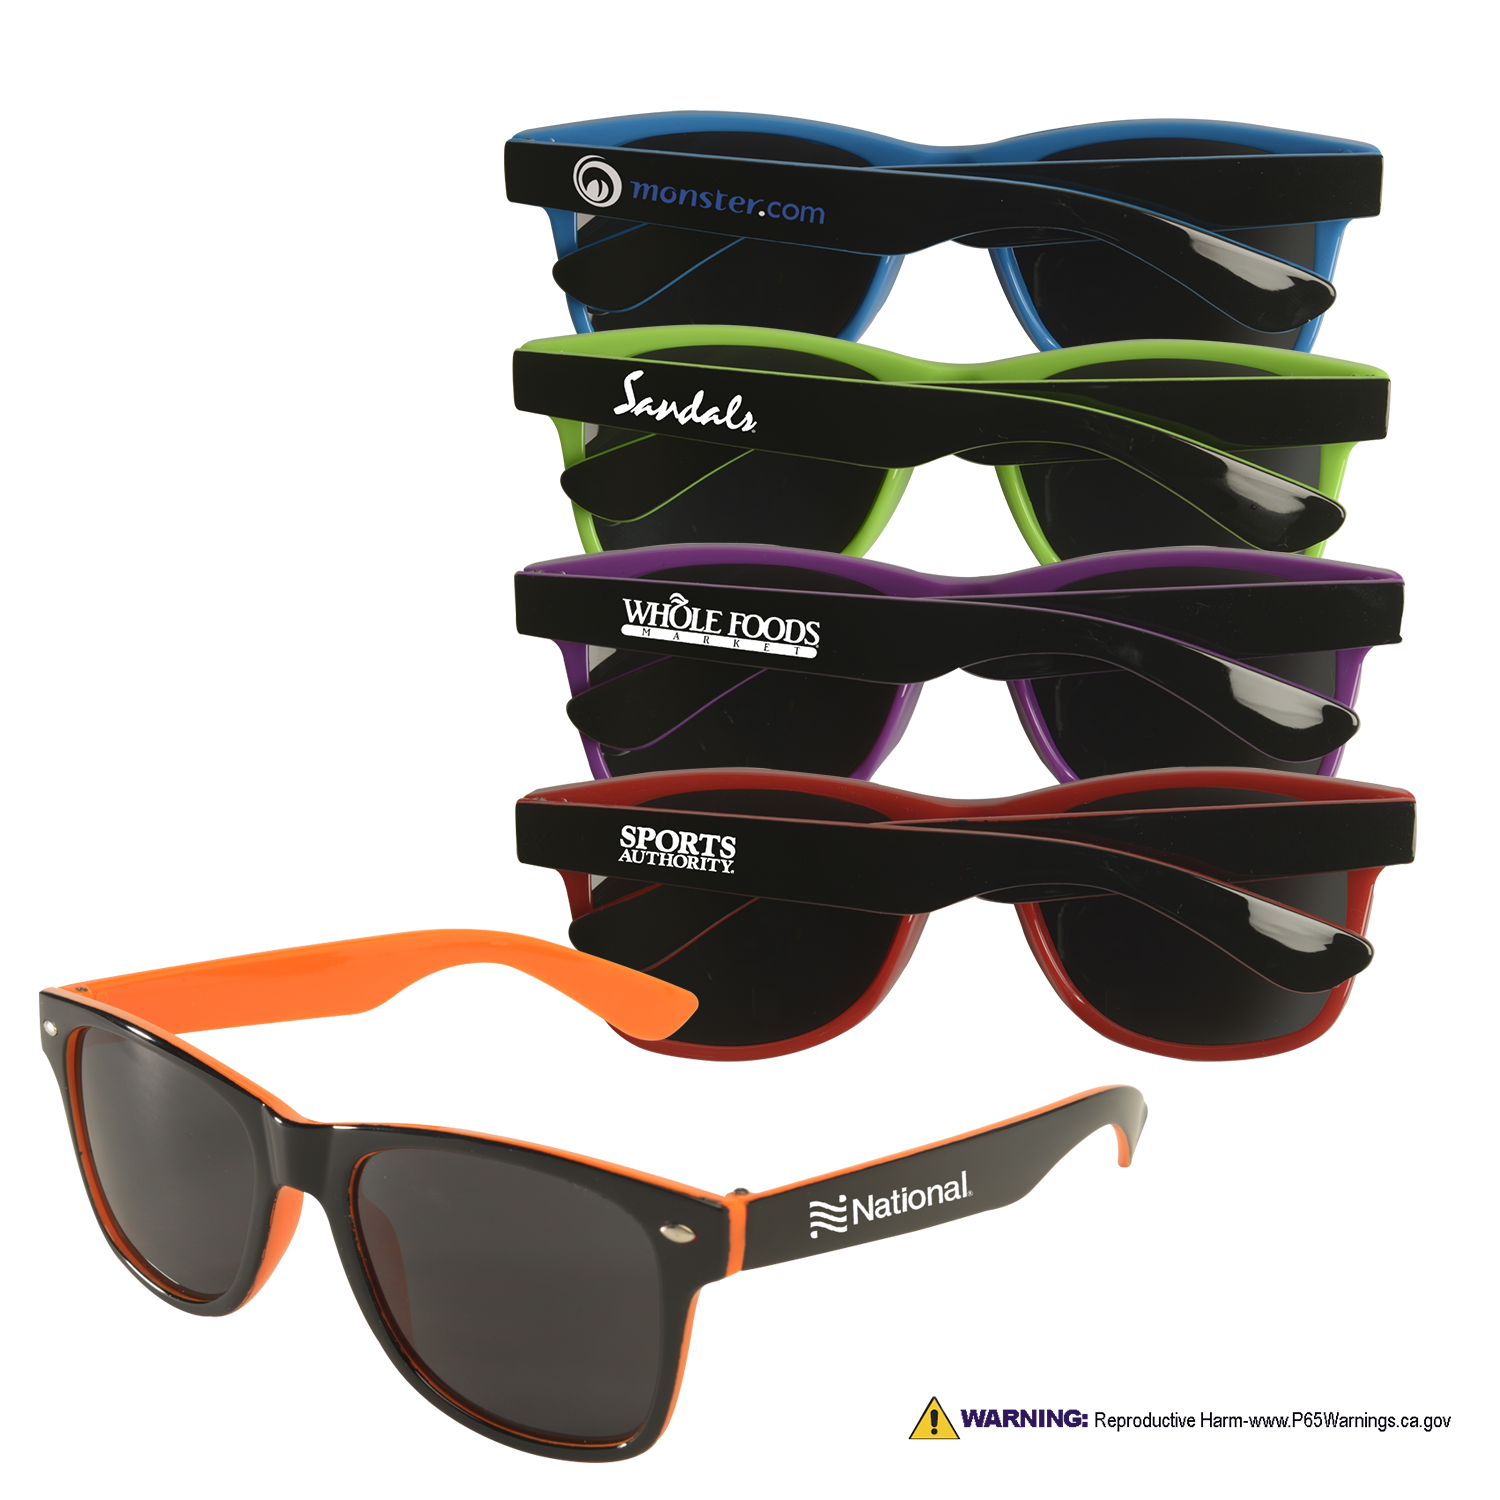 Miami Two-Tone Sunglasses